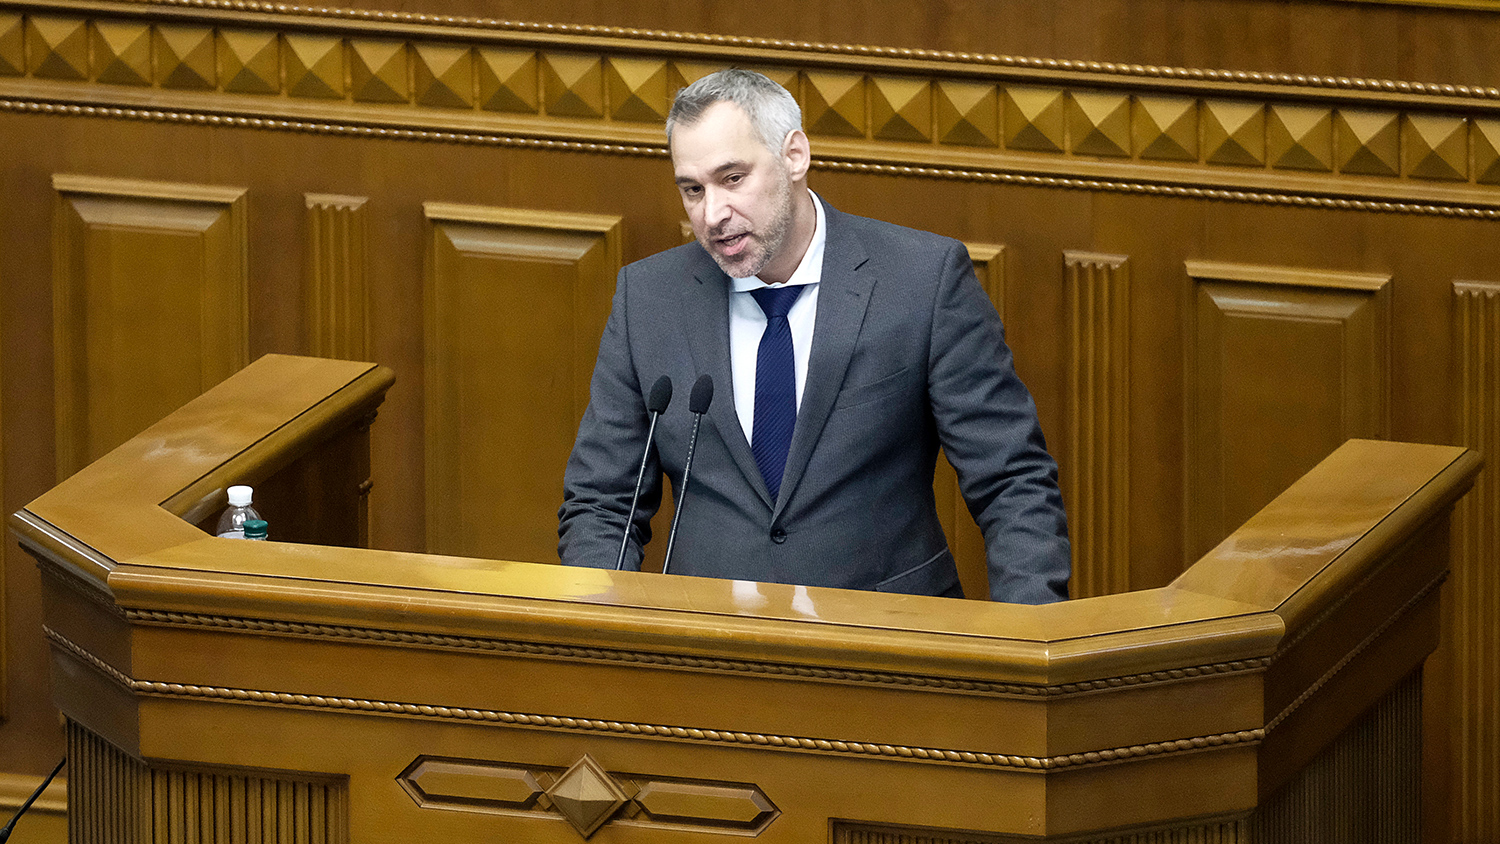 Генпрокурор Украины Руслан Рябошапка на внеочередном заседании Верховной рады по вопросу о его...

